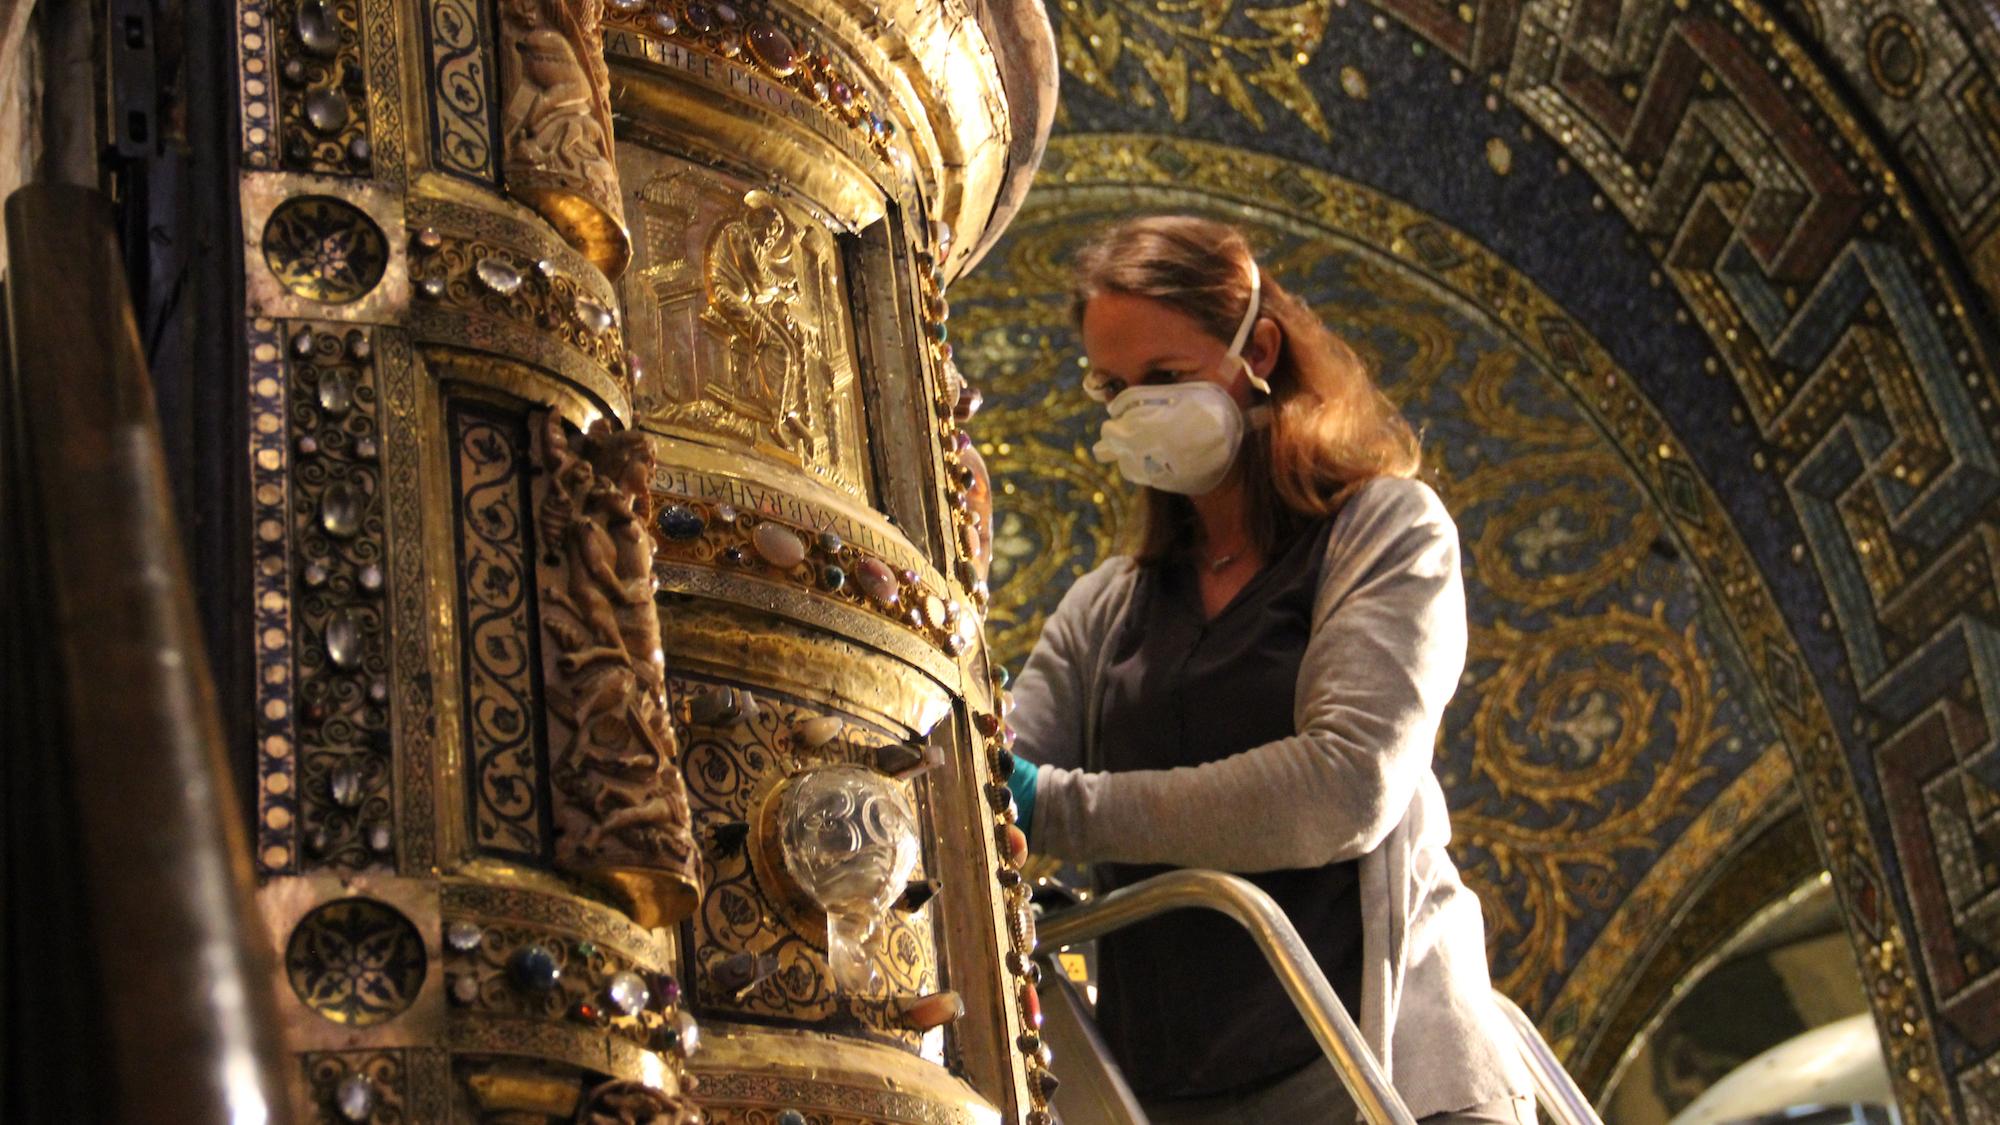 Restauratorin Stefanie Korr bei der Arbeit am Ambo Heinrichs II. in der Chorhalle (c) Andrea Thomas